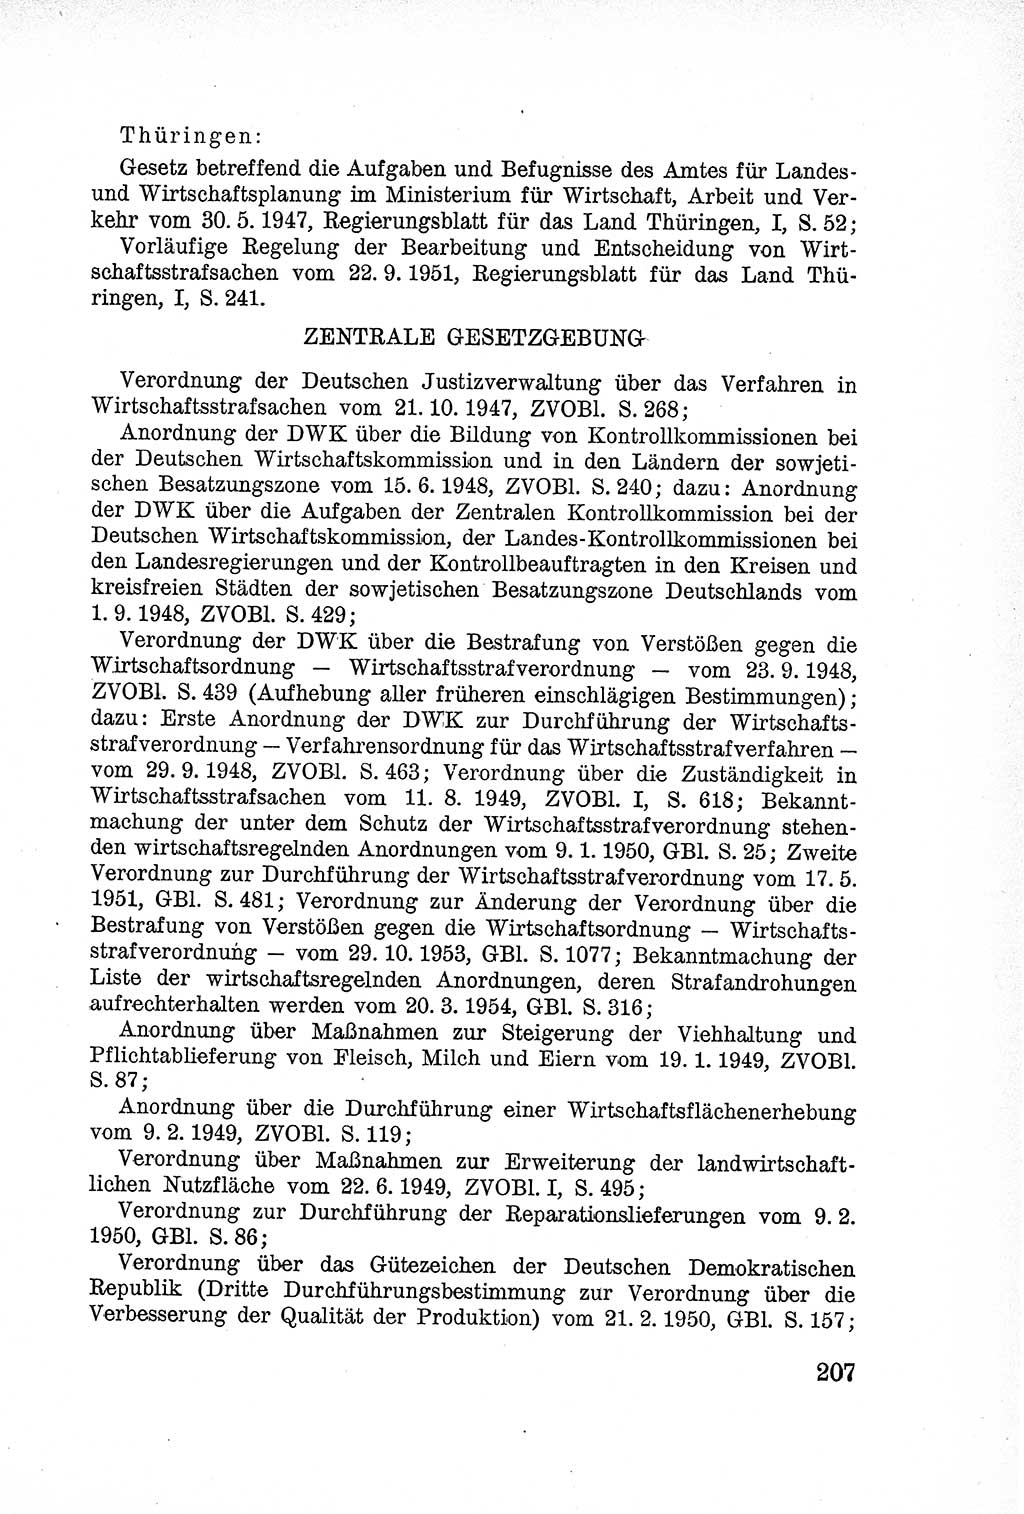 Lehrbuch des Strafrechts der Deutschen Demokratischen Republik (DDR), Allgemeiner Teil 1957, Seite 207 (Lb. Strafr. DDR AT 1957, S. 207)